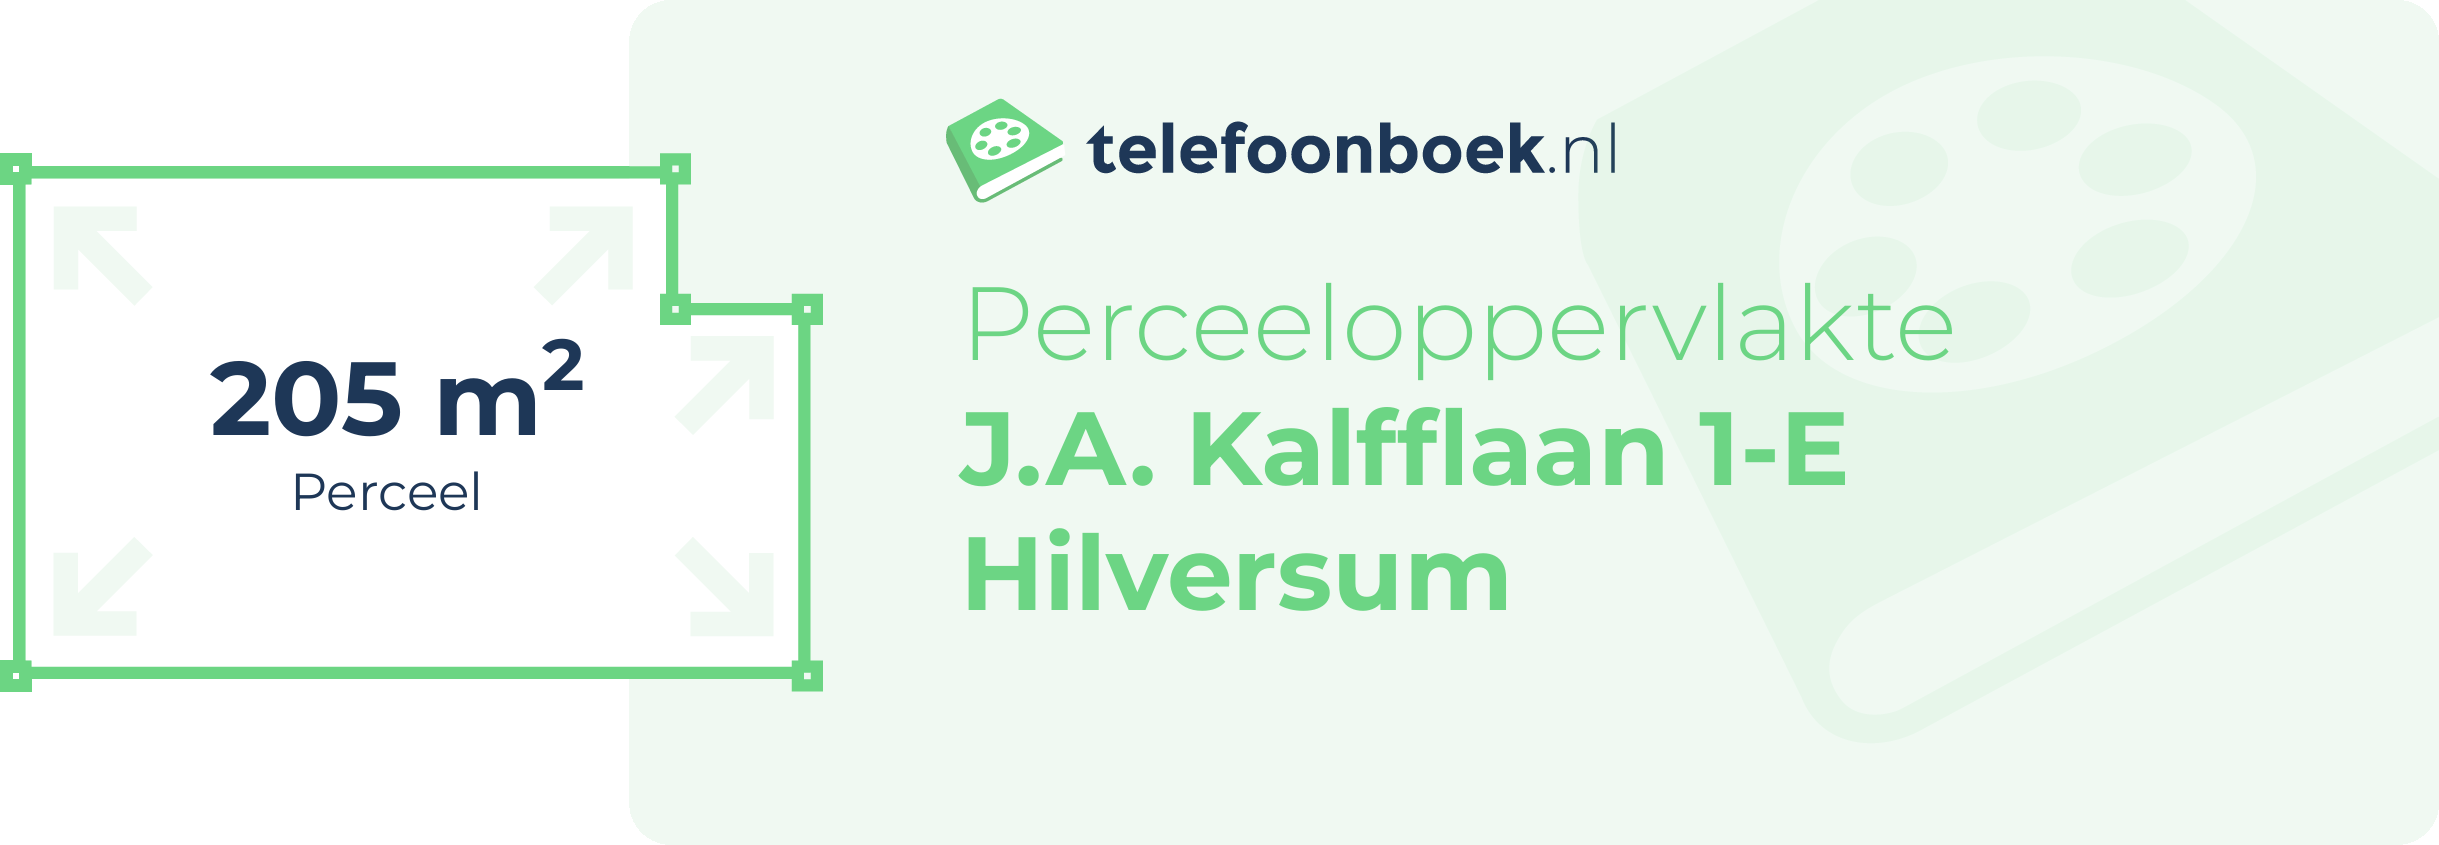 Perceeloppervlakte J.A. Kalfflaan 1-E Hilversum